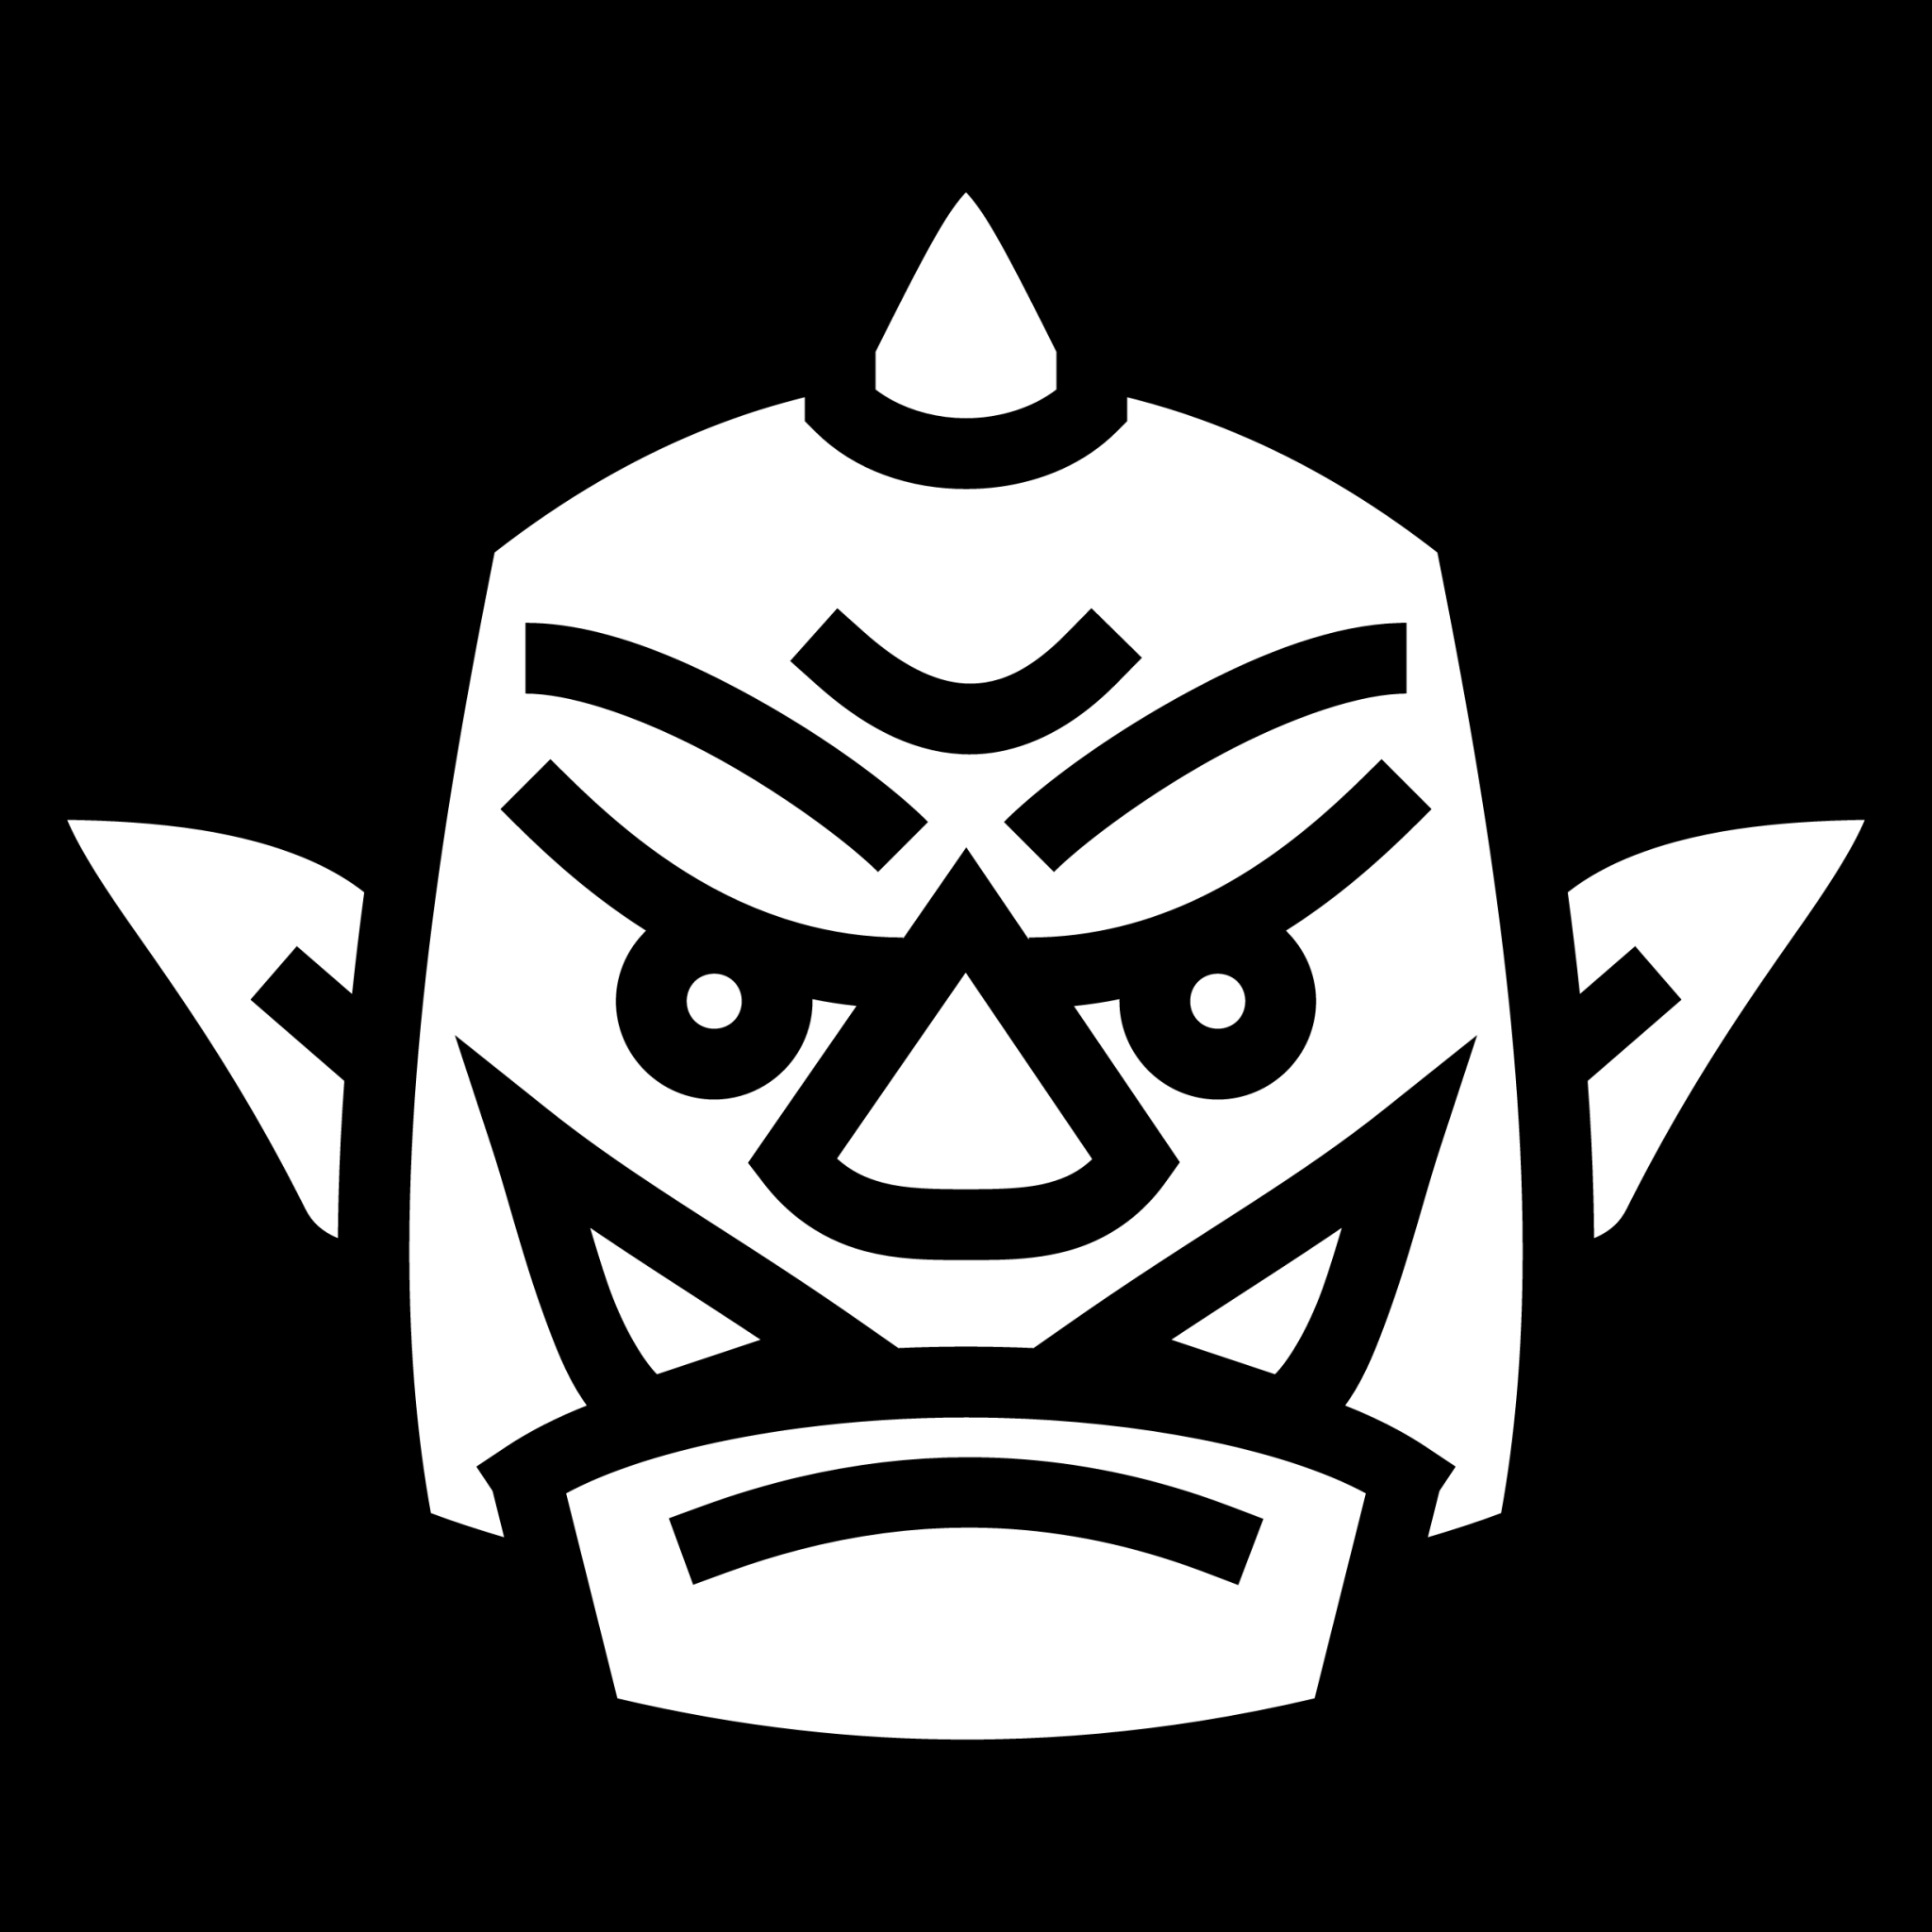 orc head icon